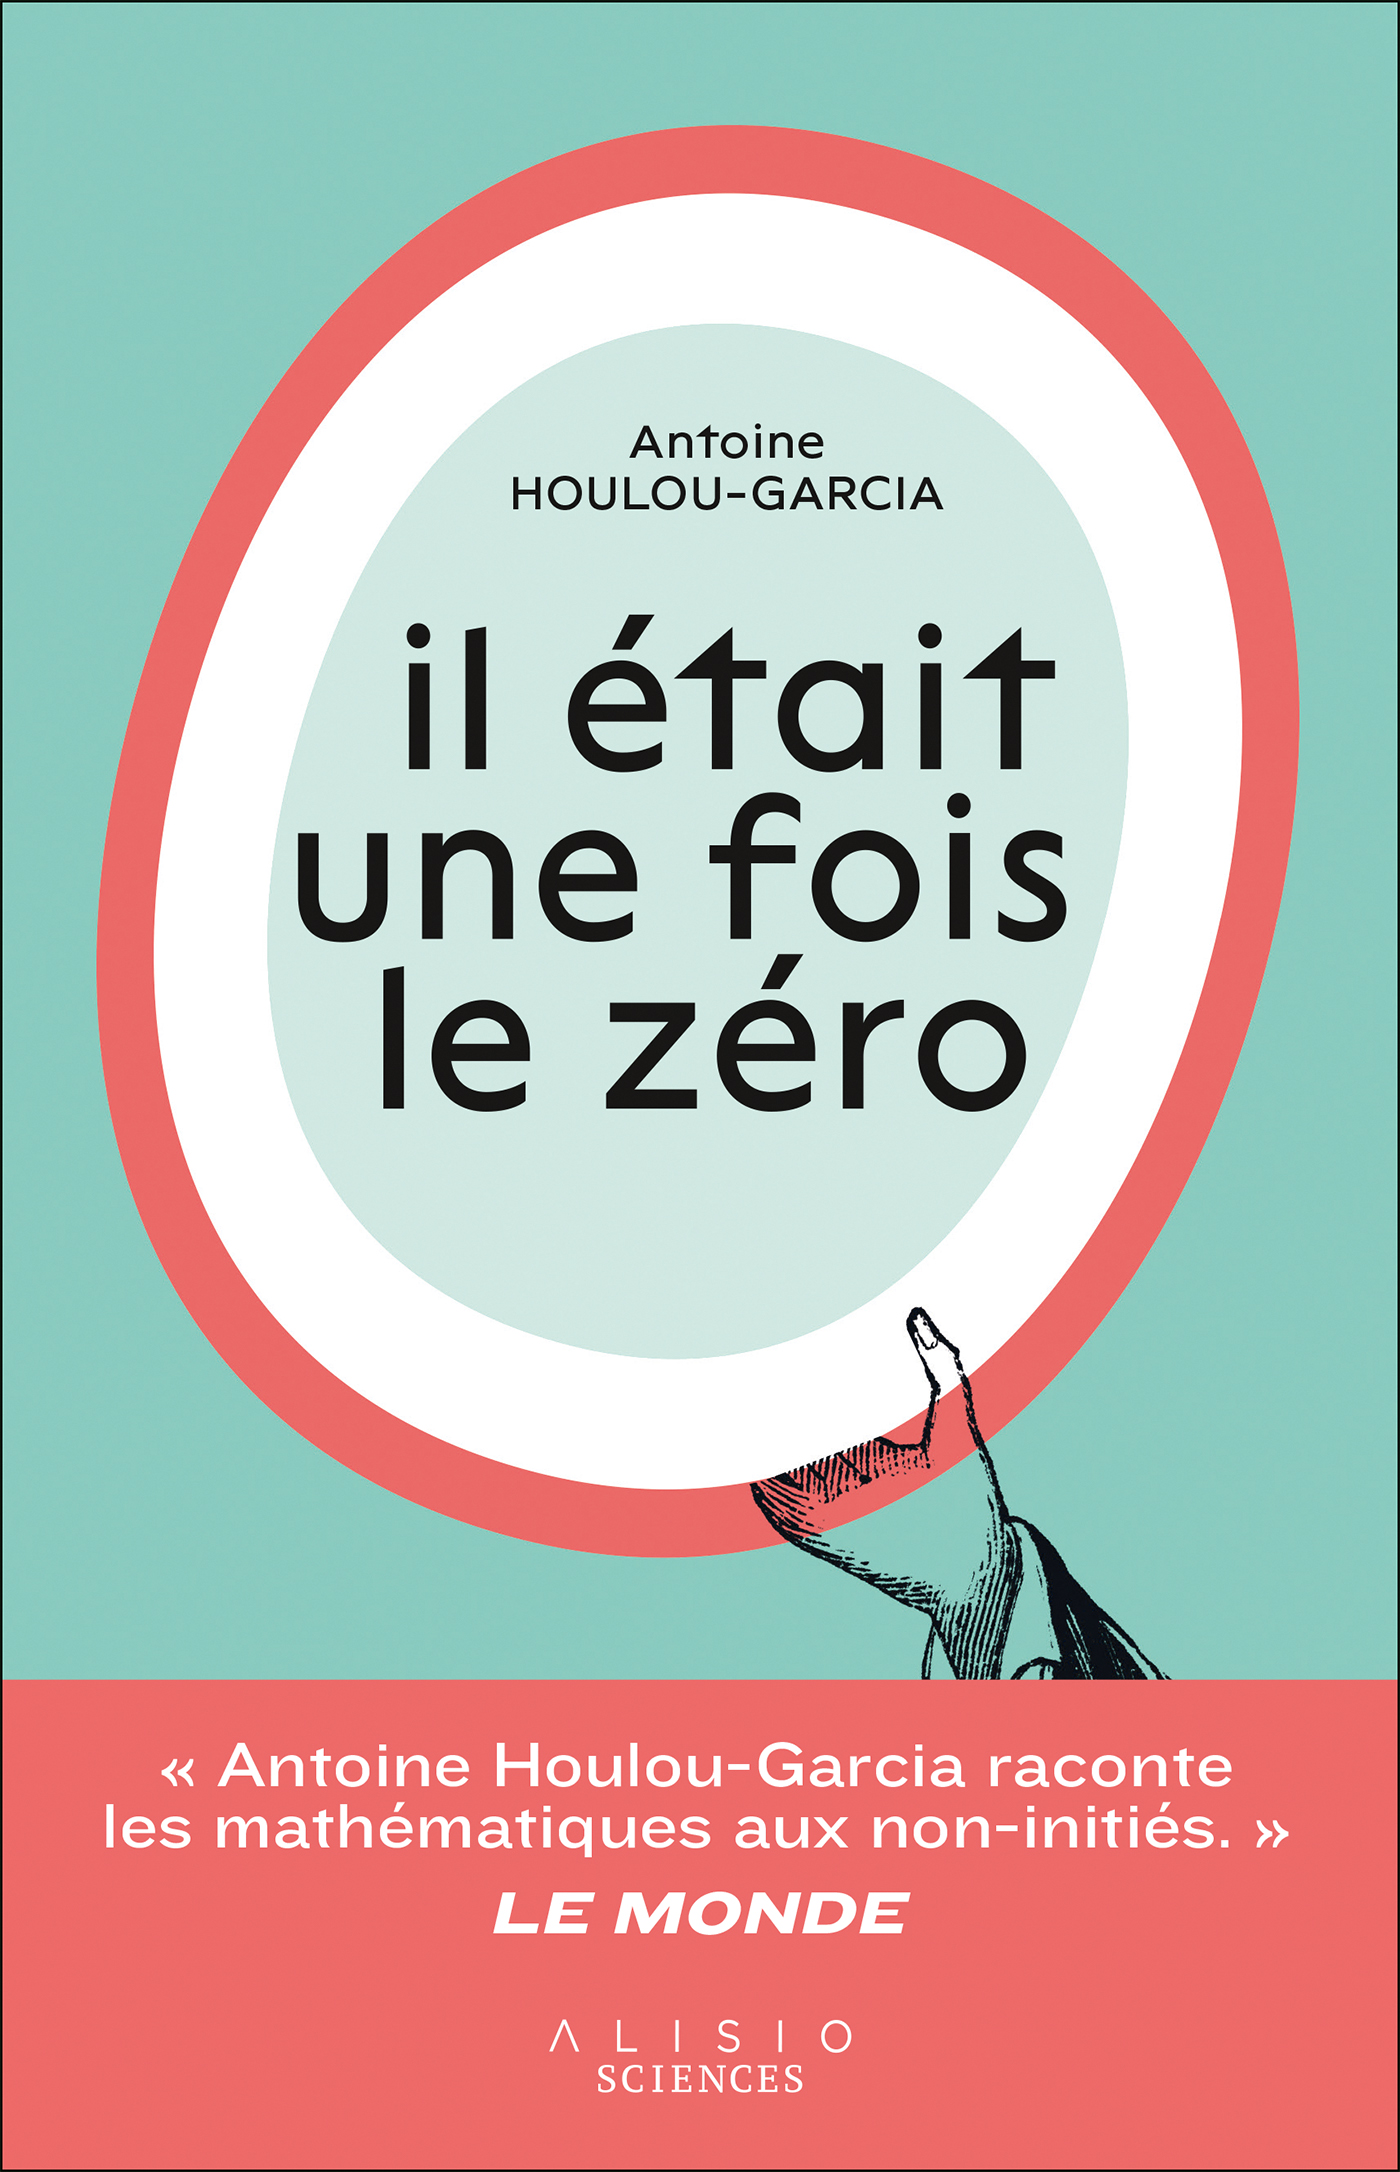 Il était une fois le zéro - - Antoine Houlou-Garcia (EAN13 : 9782379353383)   Le site des éditions Leduc : vente en ligne de livres et d'ebooks (livres  numériques)